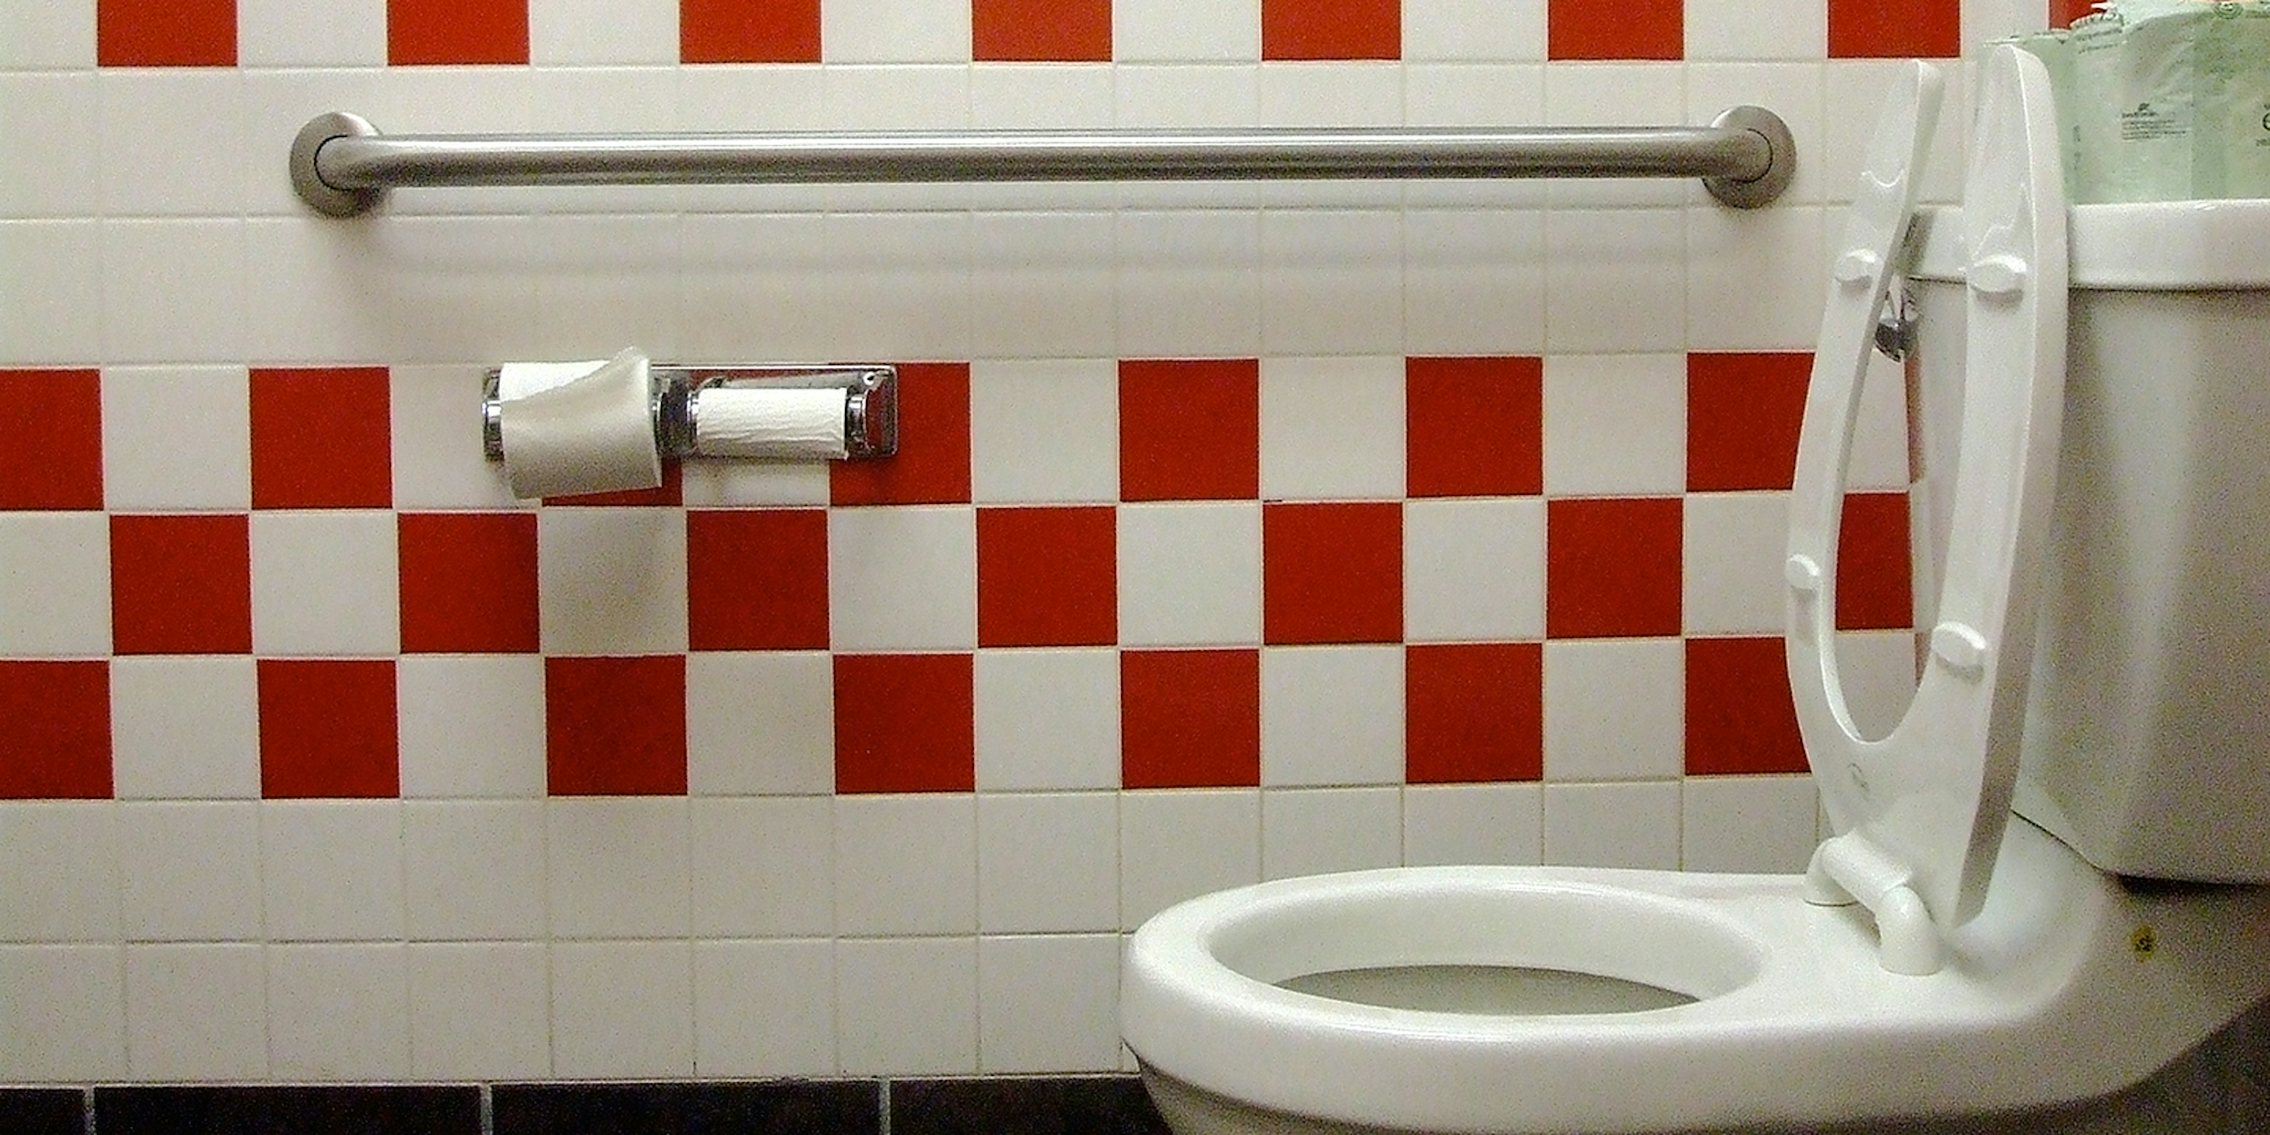 Public toilet @Union Square Park, The new men's restroom at…